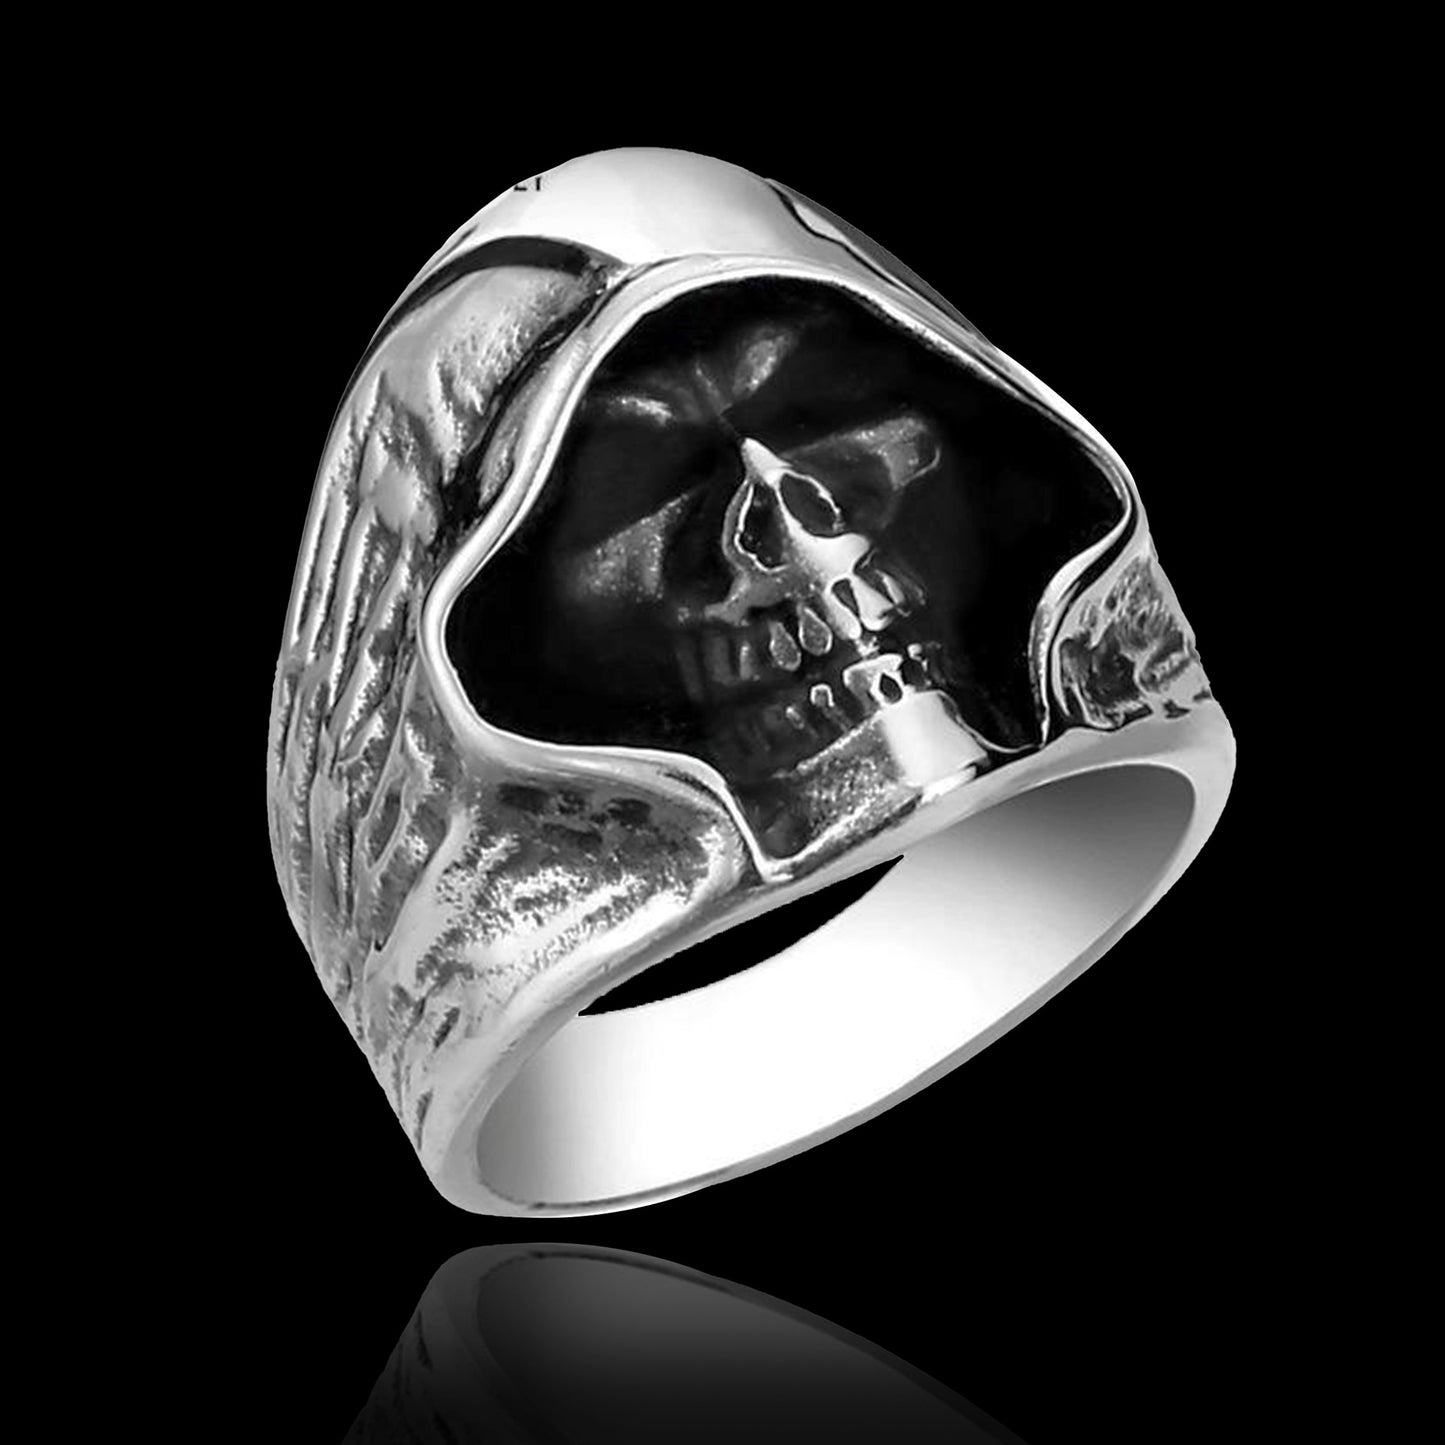 Retro Death Skull Ring